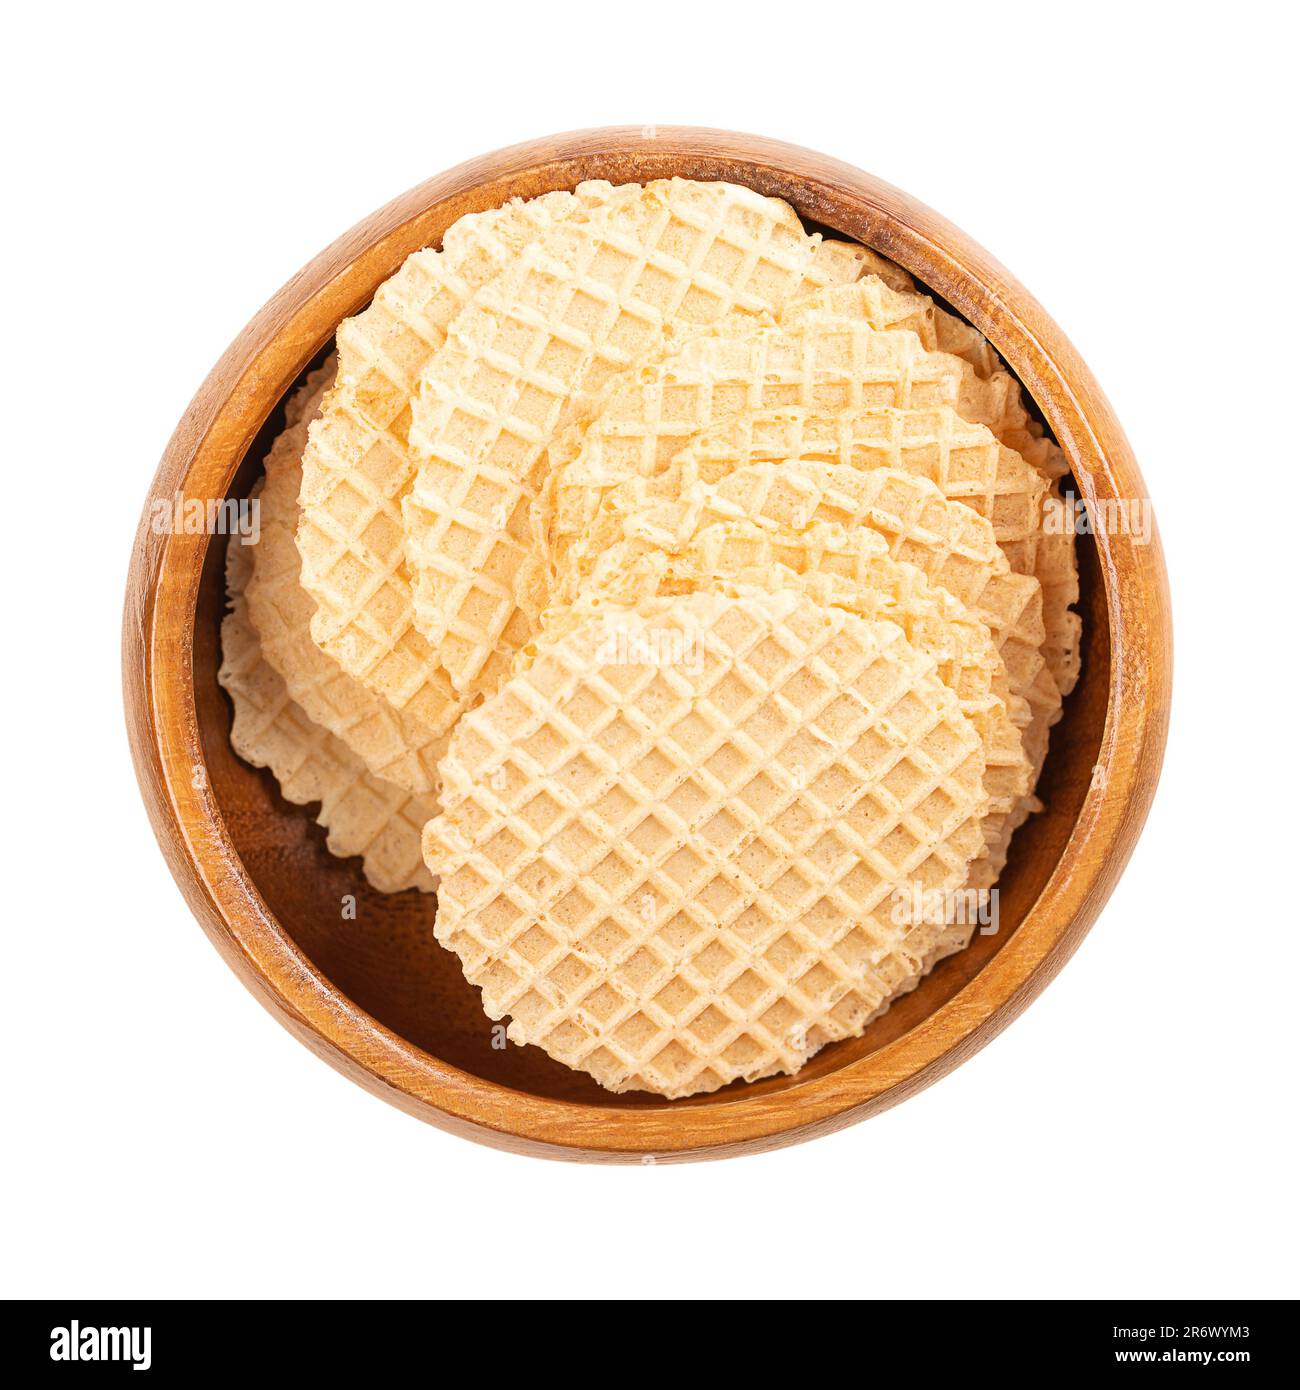 Cracker di formaggio in una ciotola di legno. Snack a forma di fette circolari e sottilissime, in pasta di farina di grano e formaggio, croccante al forno. Foto Stock